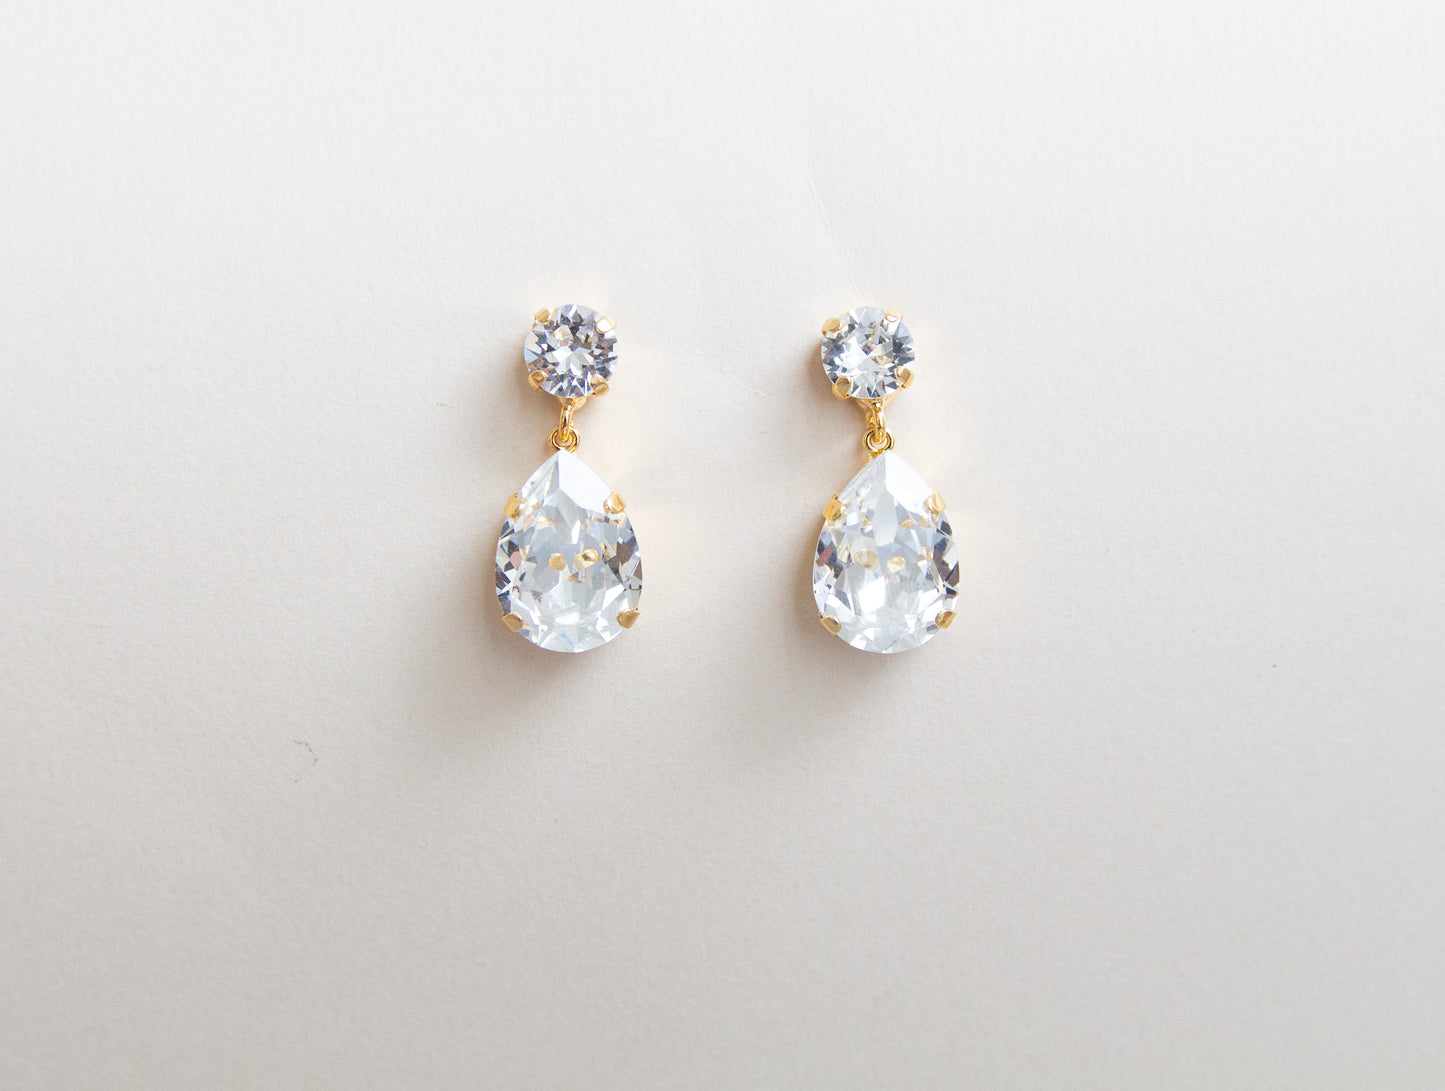 Brinley Earrings in Crystal